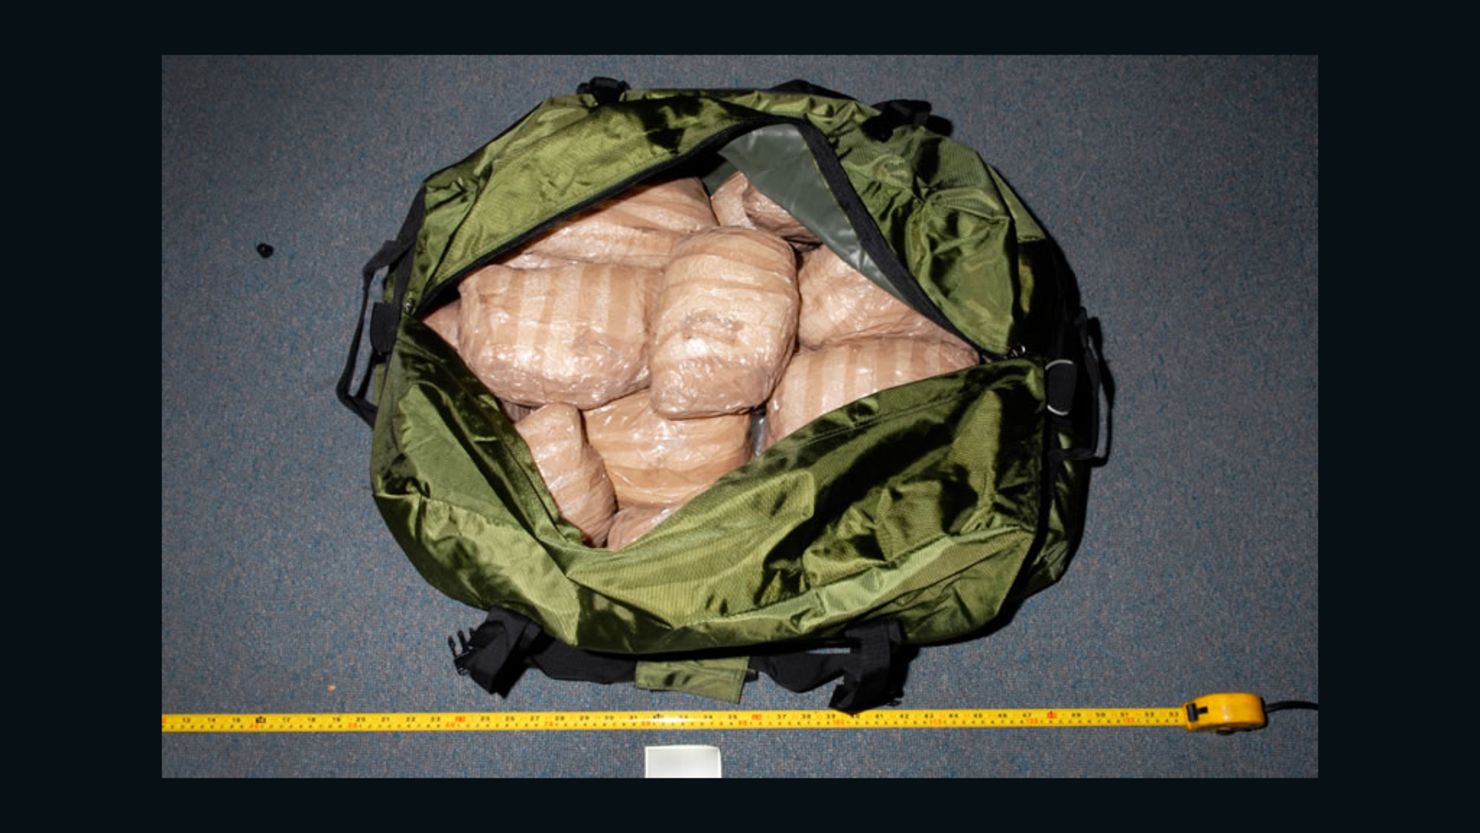 Australian police seize $246 million worth of drugs smuggled inside steamroller.